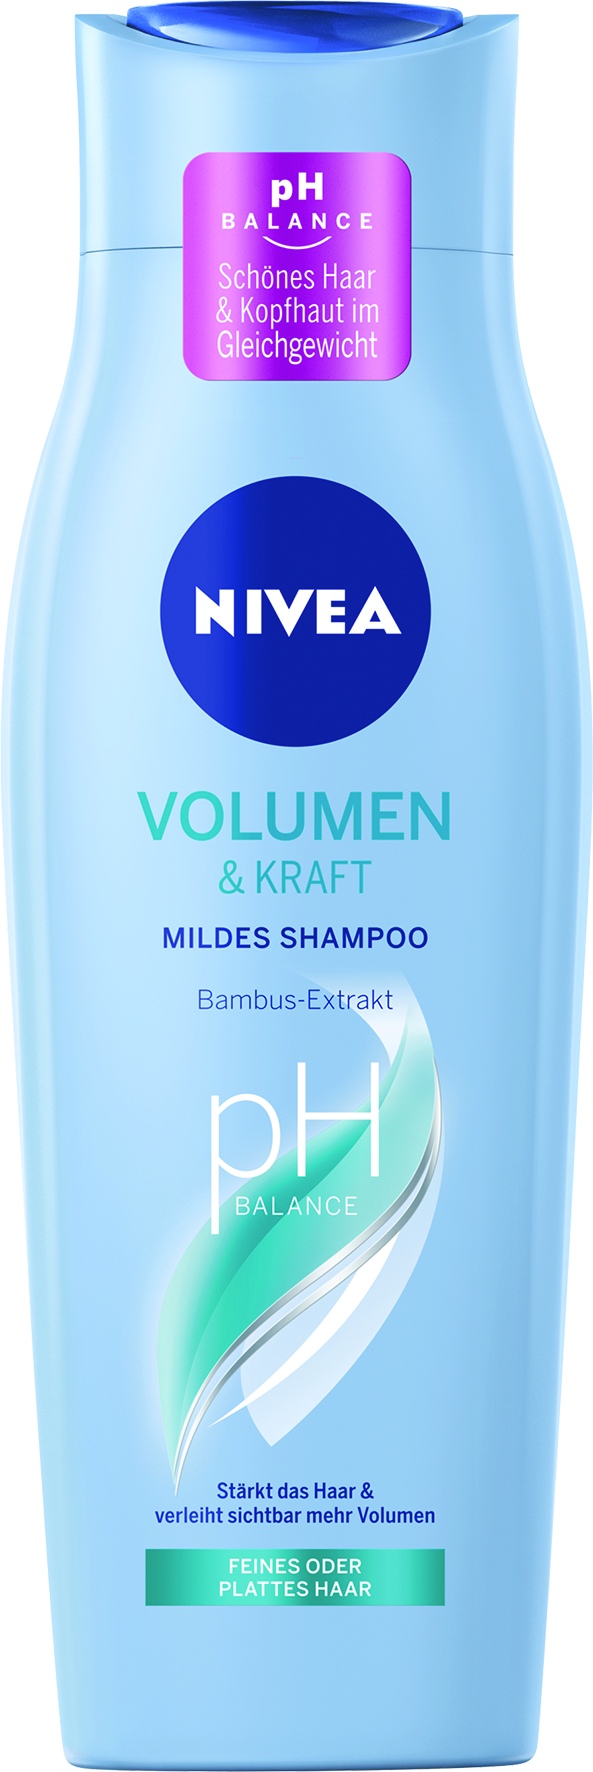 Shampoo Volumen, Kraft + Pflege   